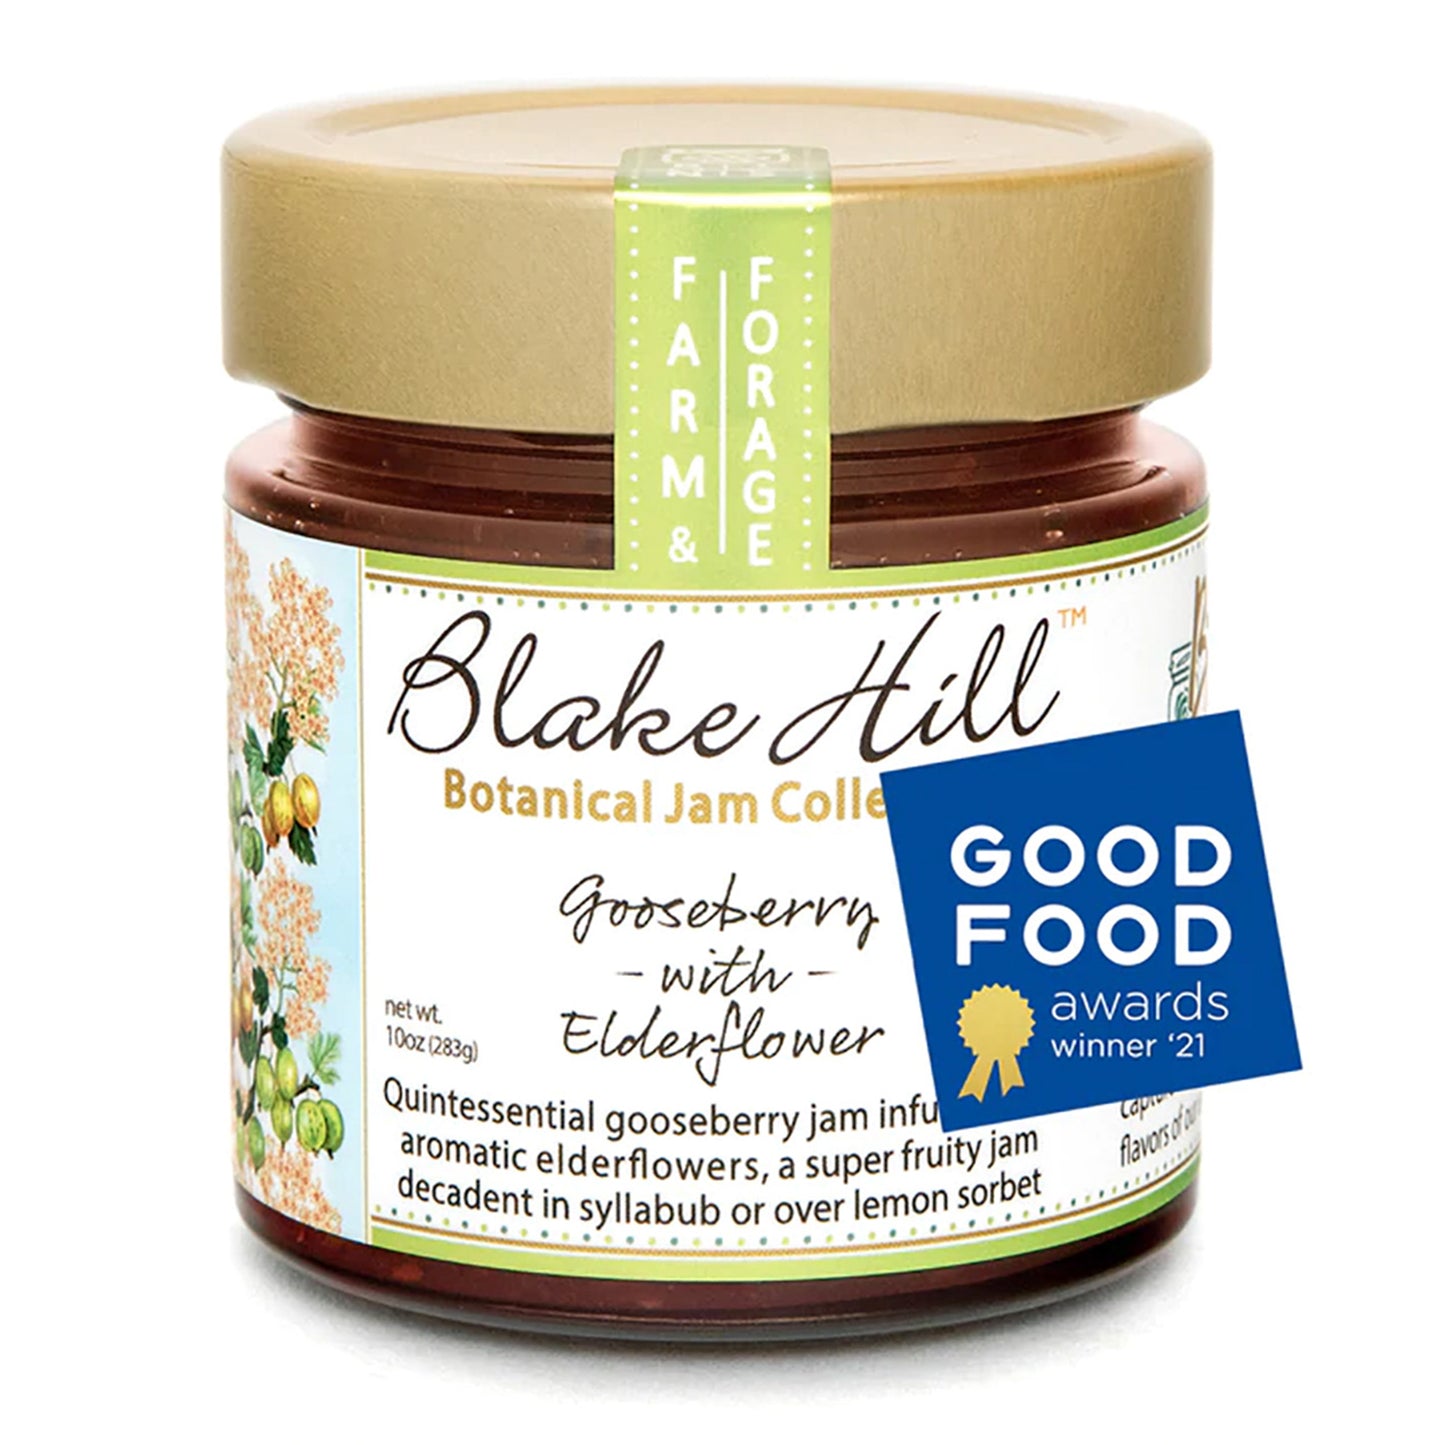 Blake Hill Gooseberry with Elderflower